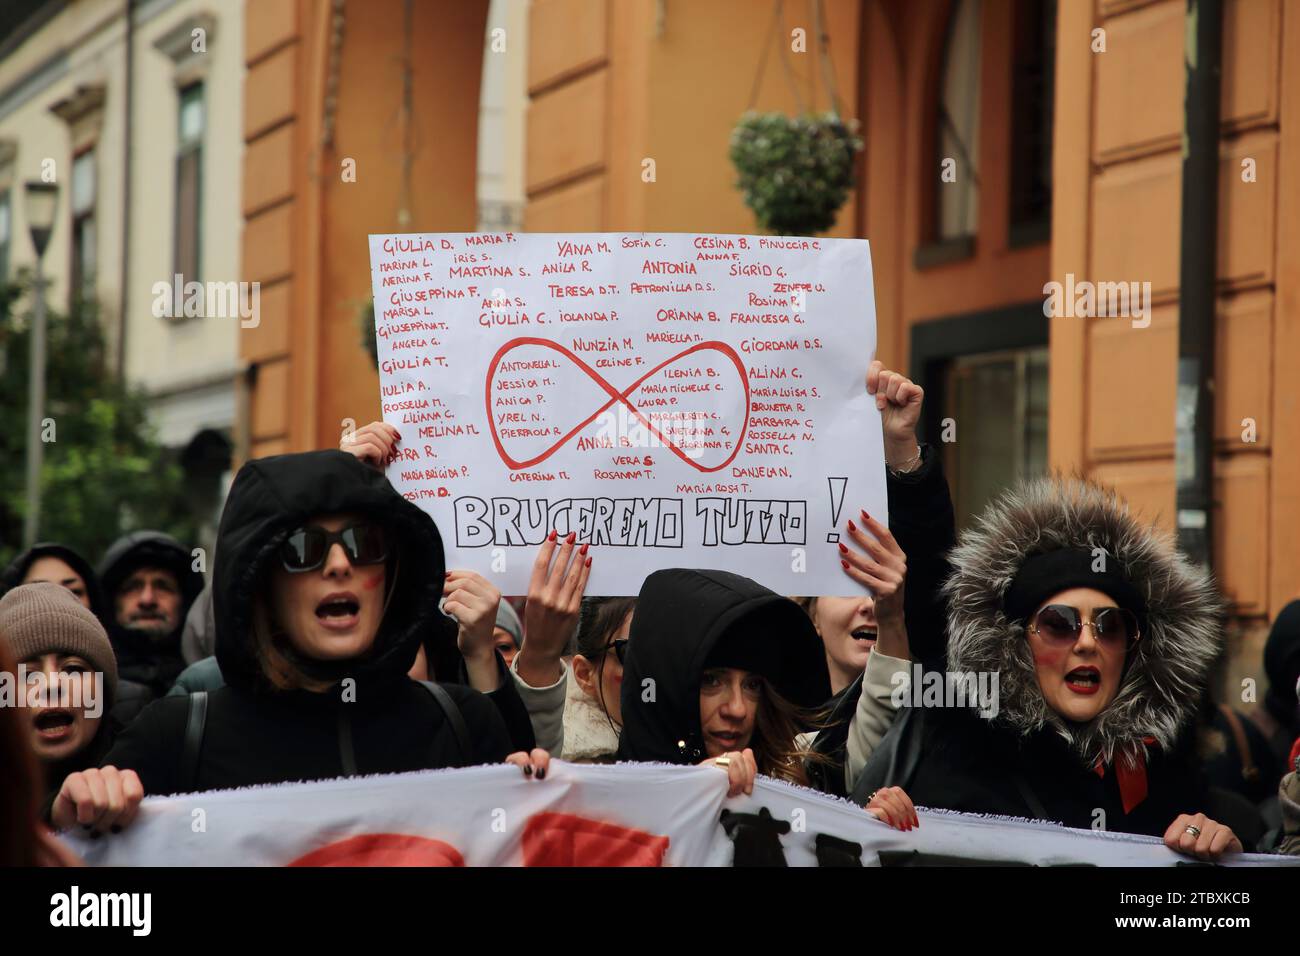 Le donne marciano in segno di protesta contro gli omicidi di donne da parte di mariti e fiduciari nella giornata internazionale contro la violenza contro le donne. Foto Stock